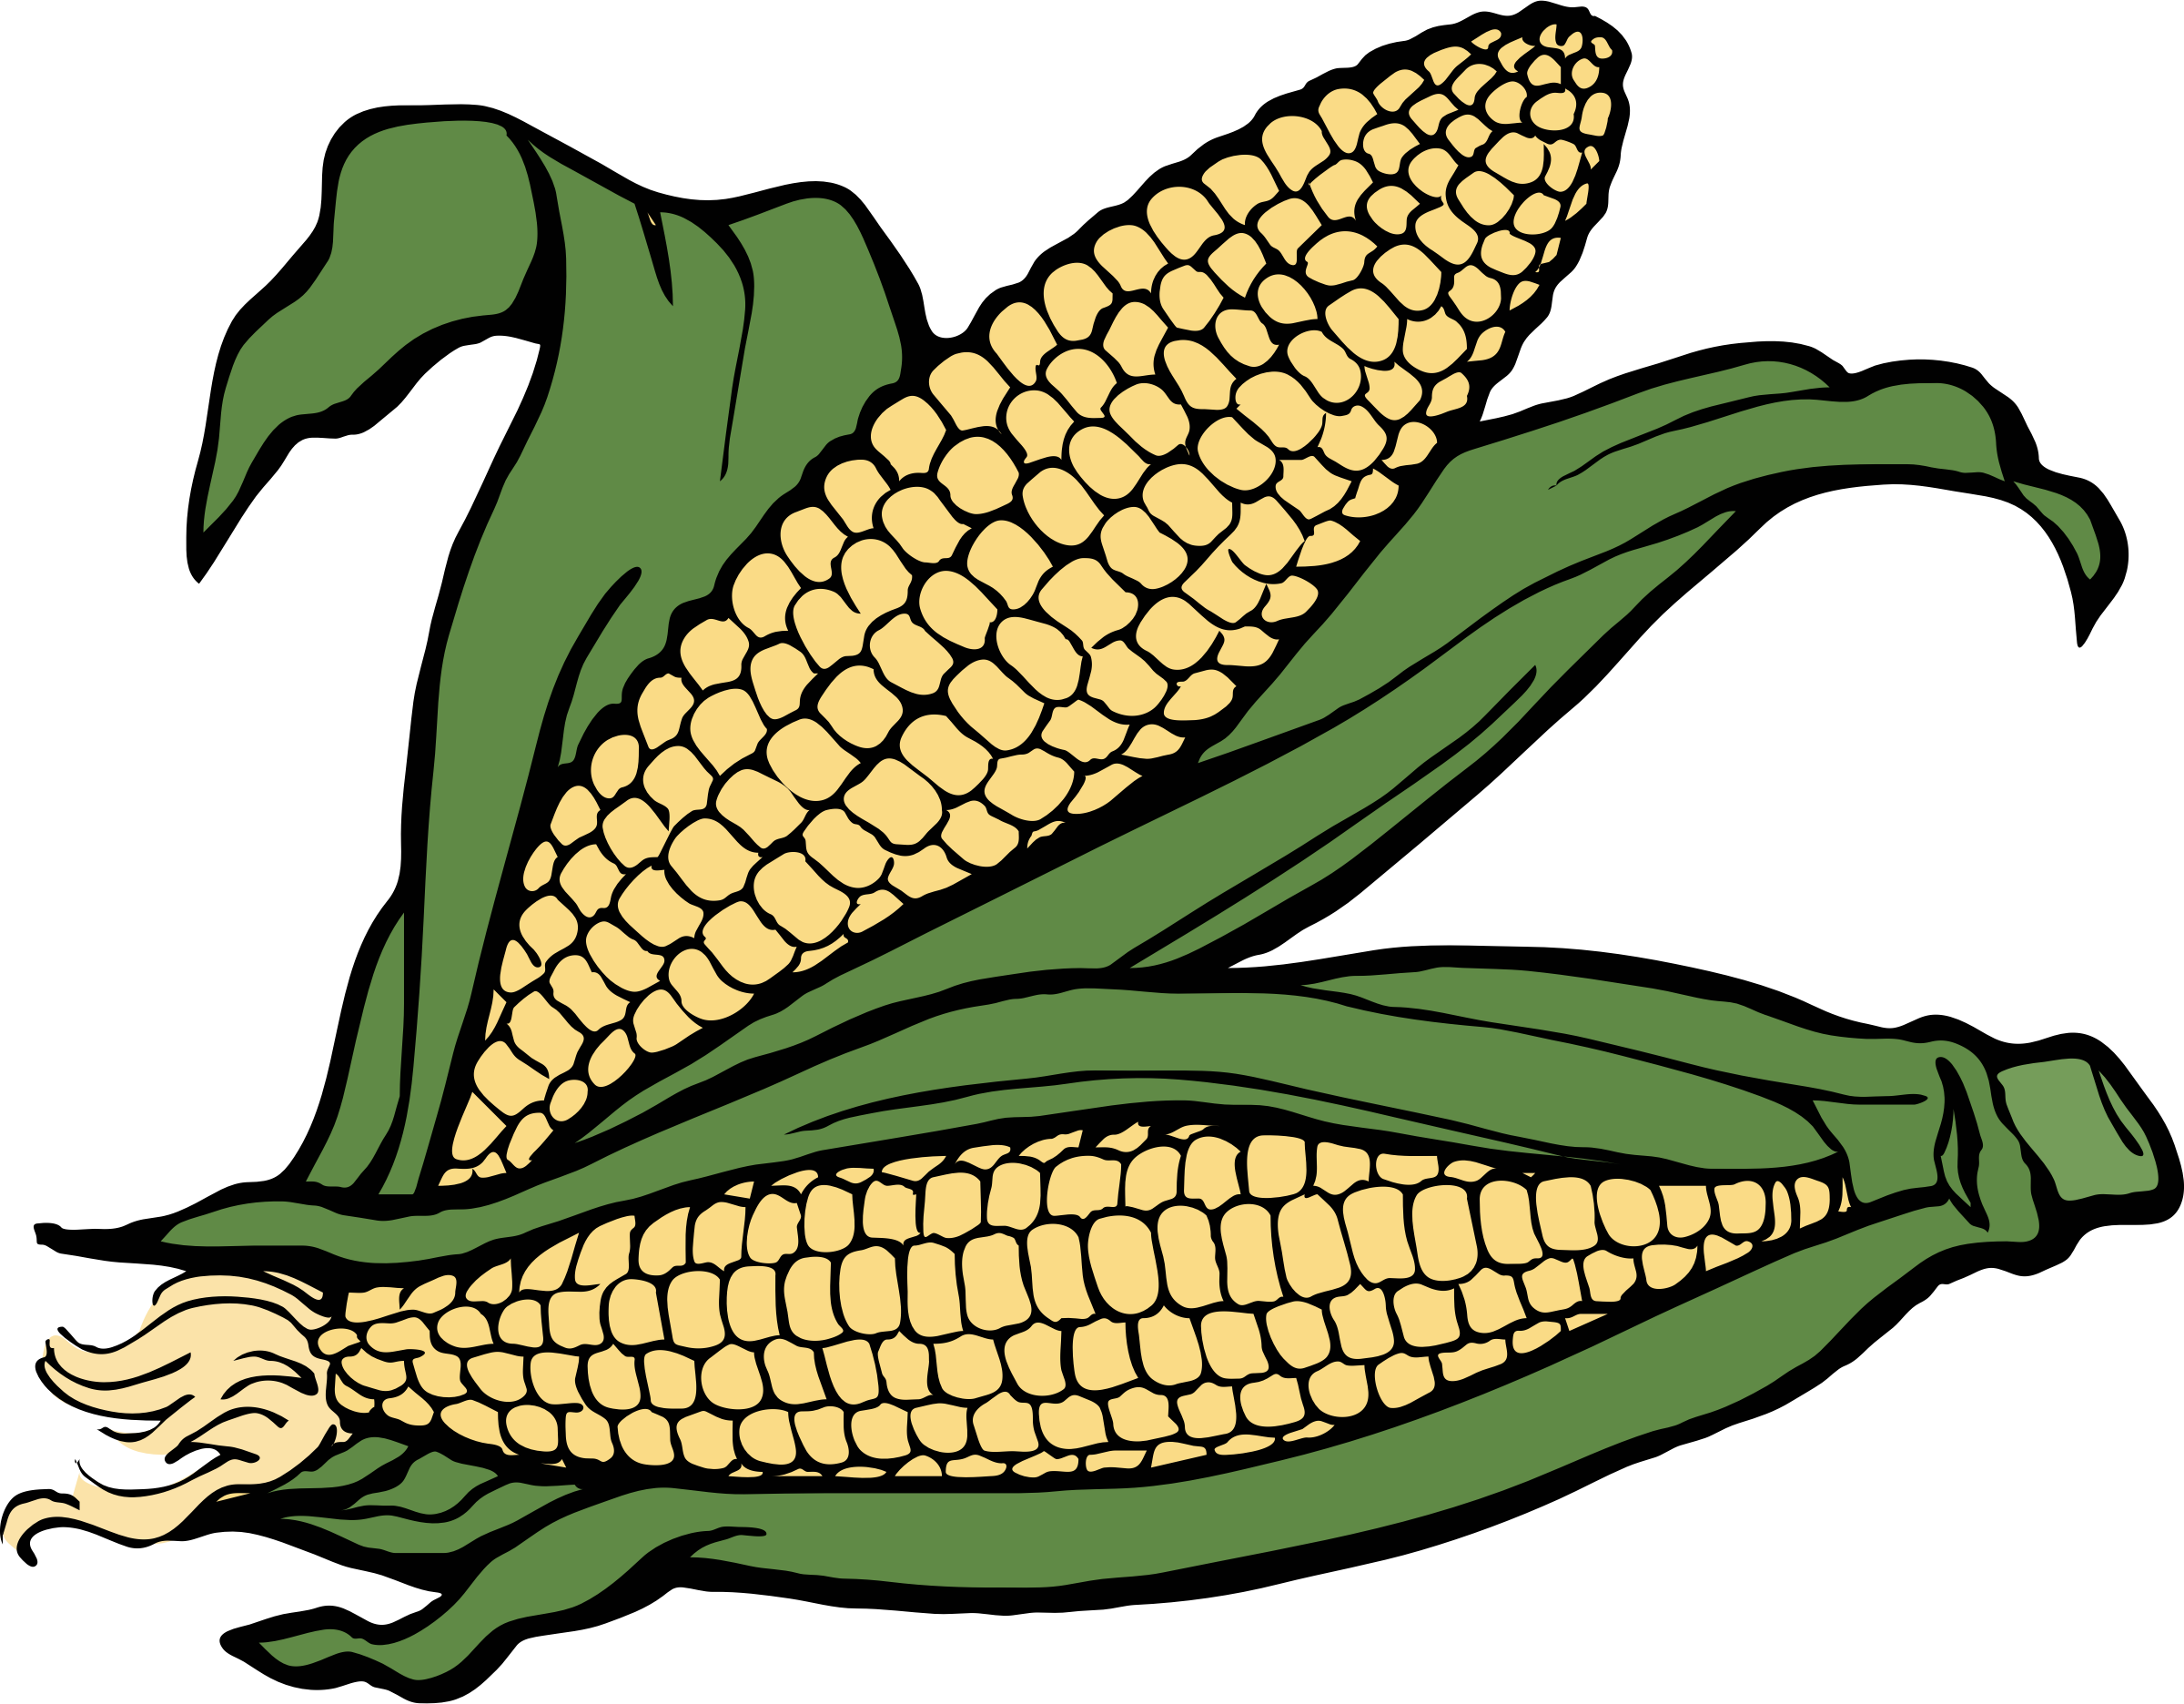 cornucopia clipart corn